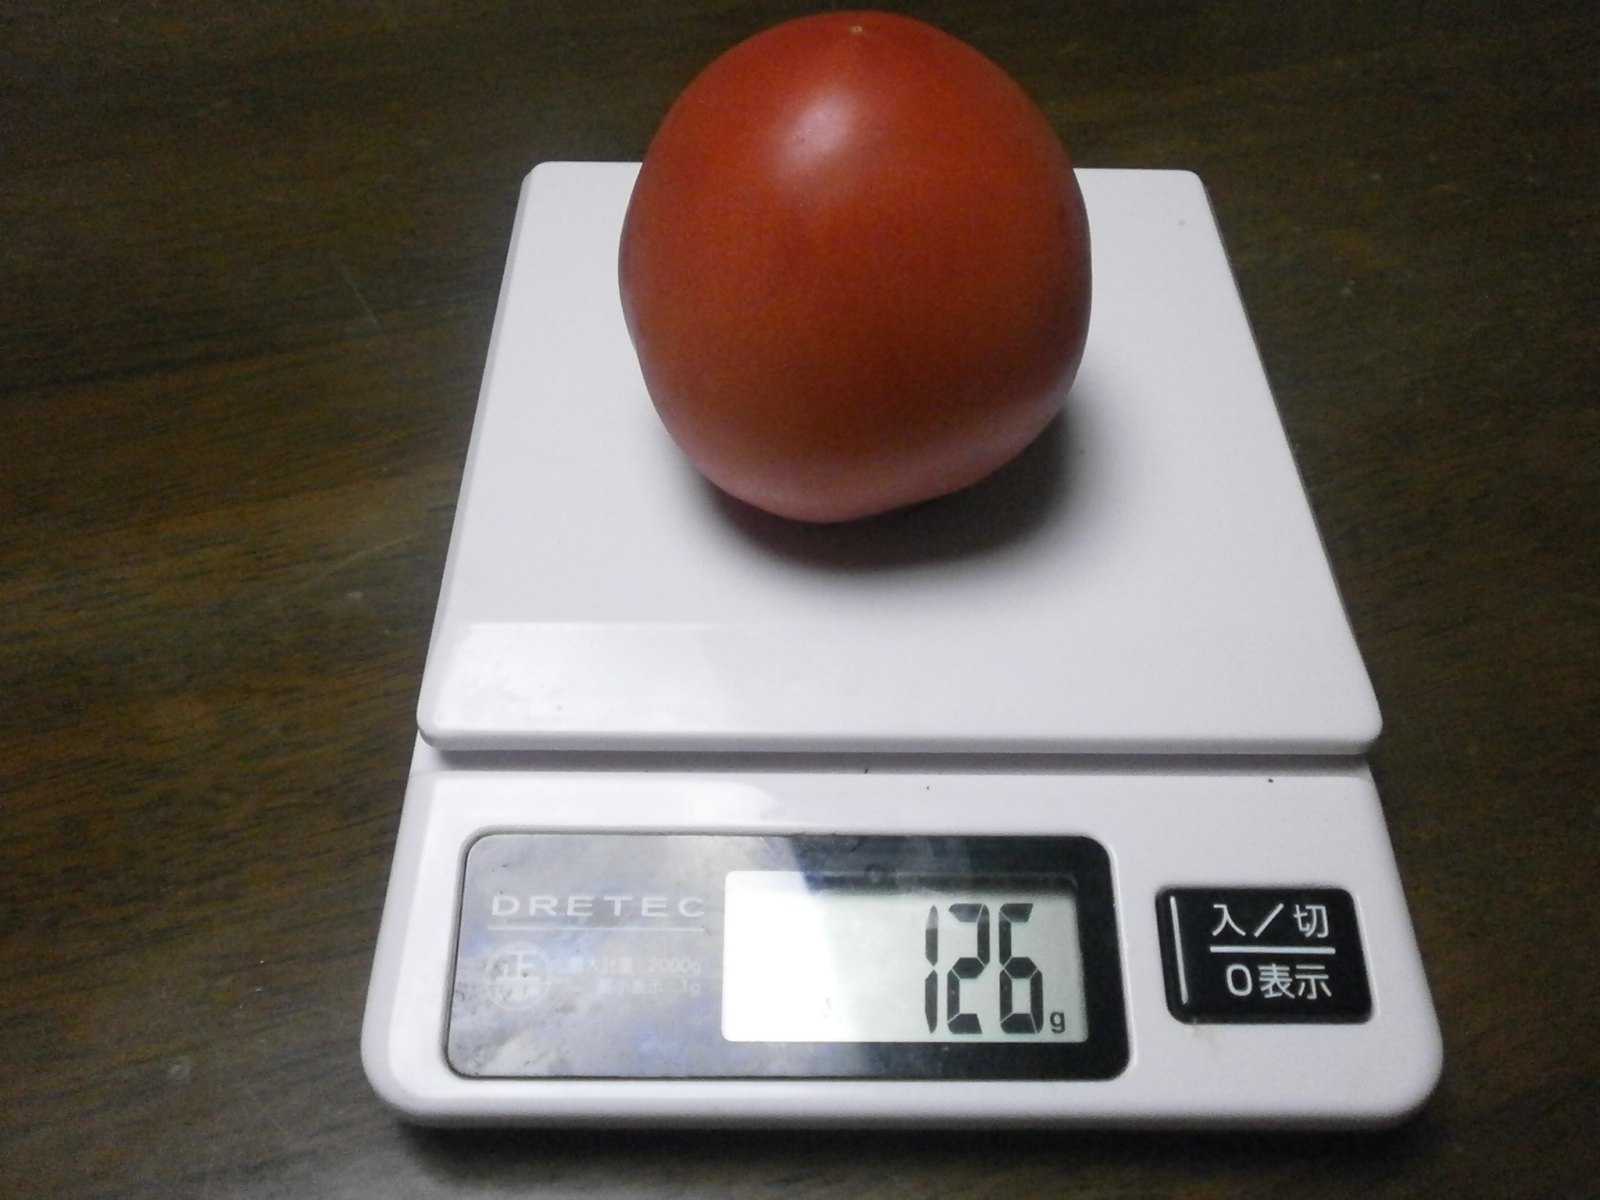 Tomato (142g/126g/103g)